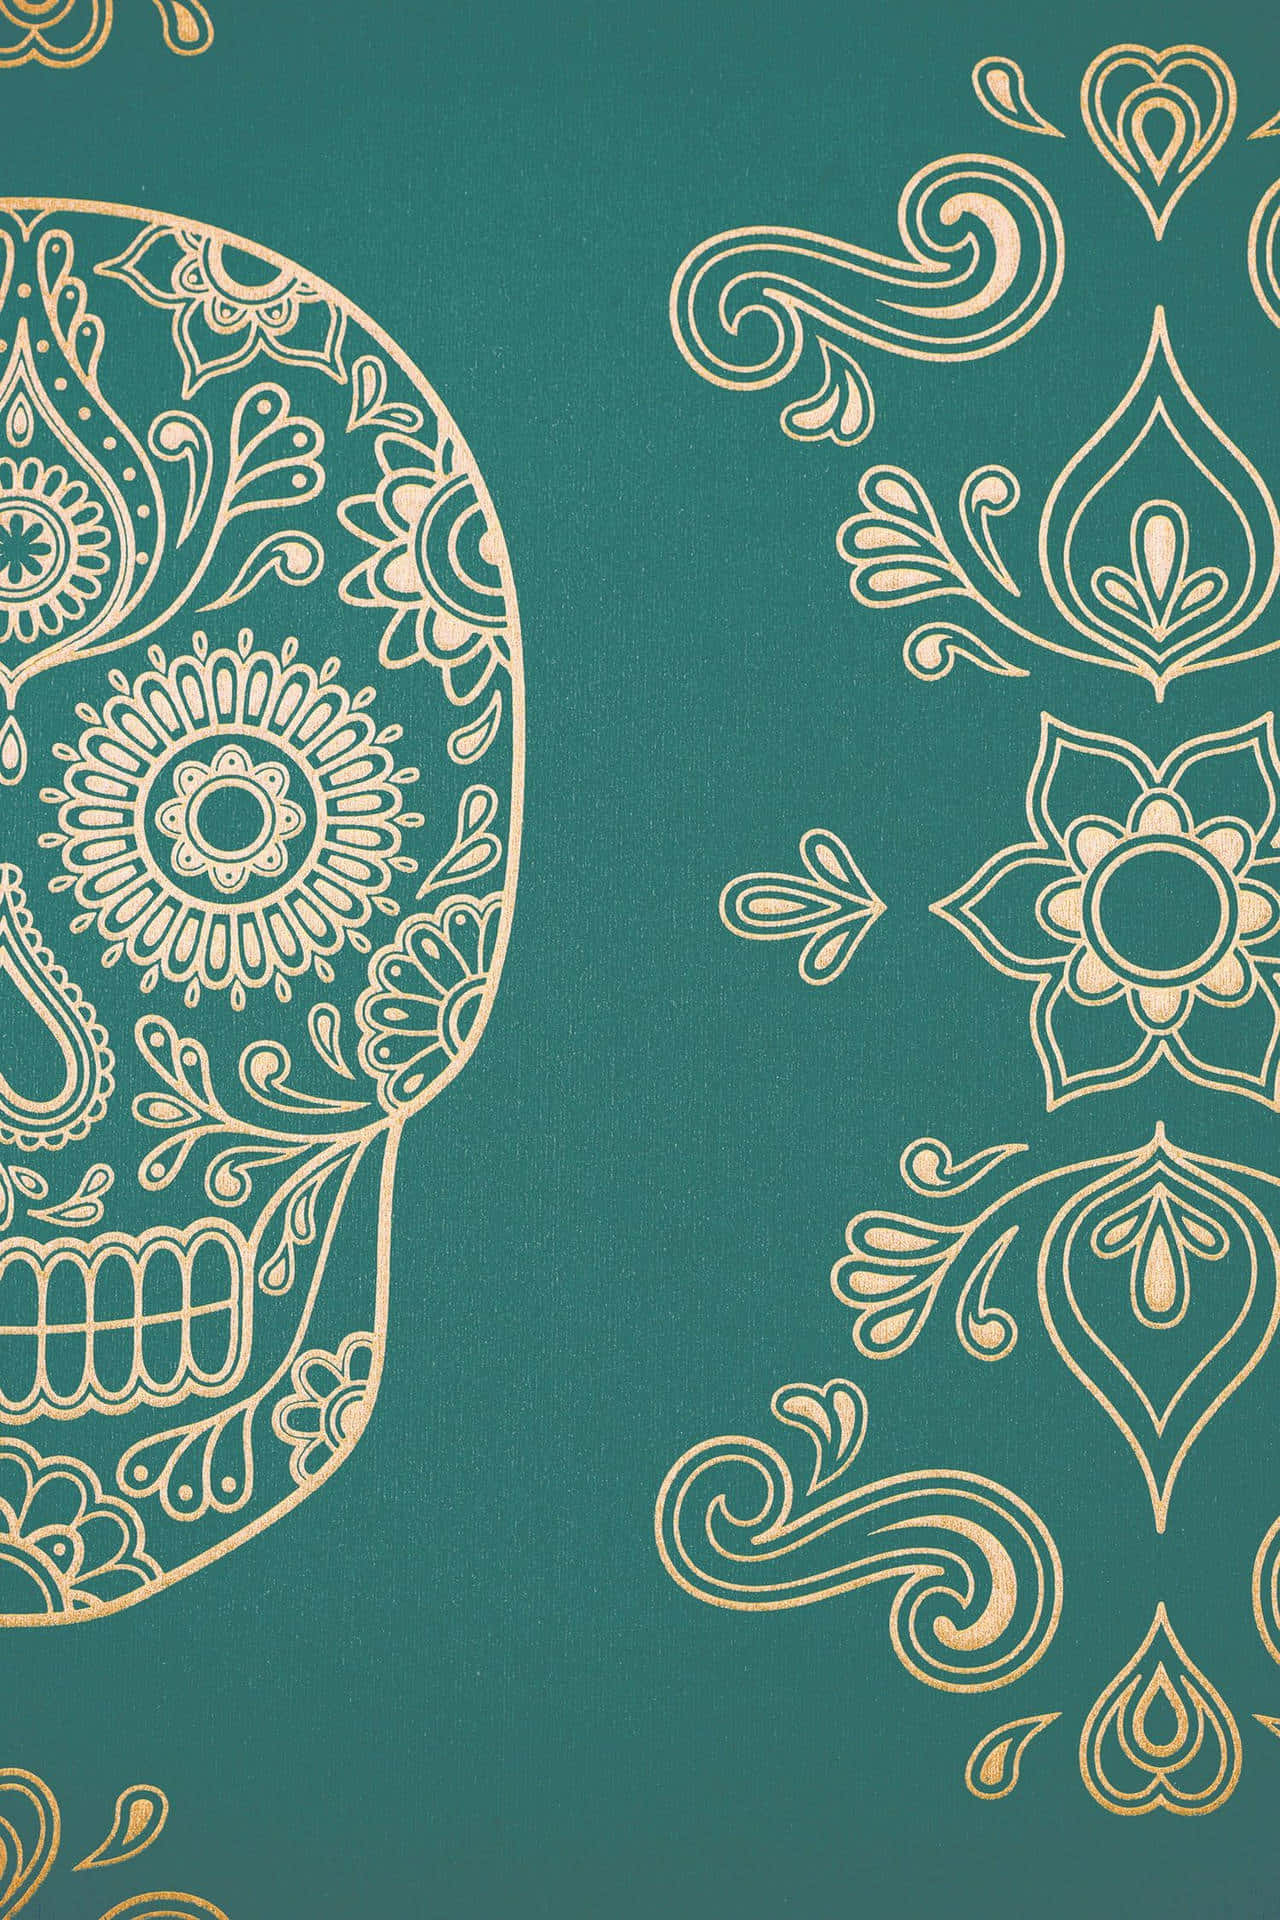 Mexican Sugar Skull Pattern Art Wallpaper